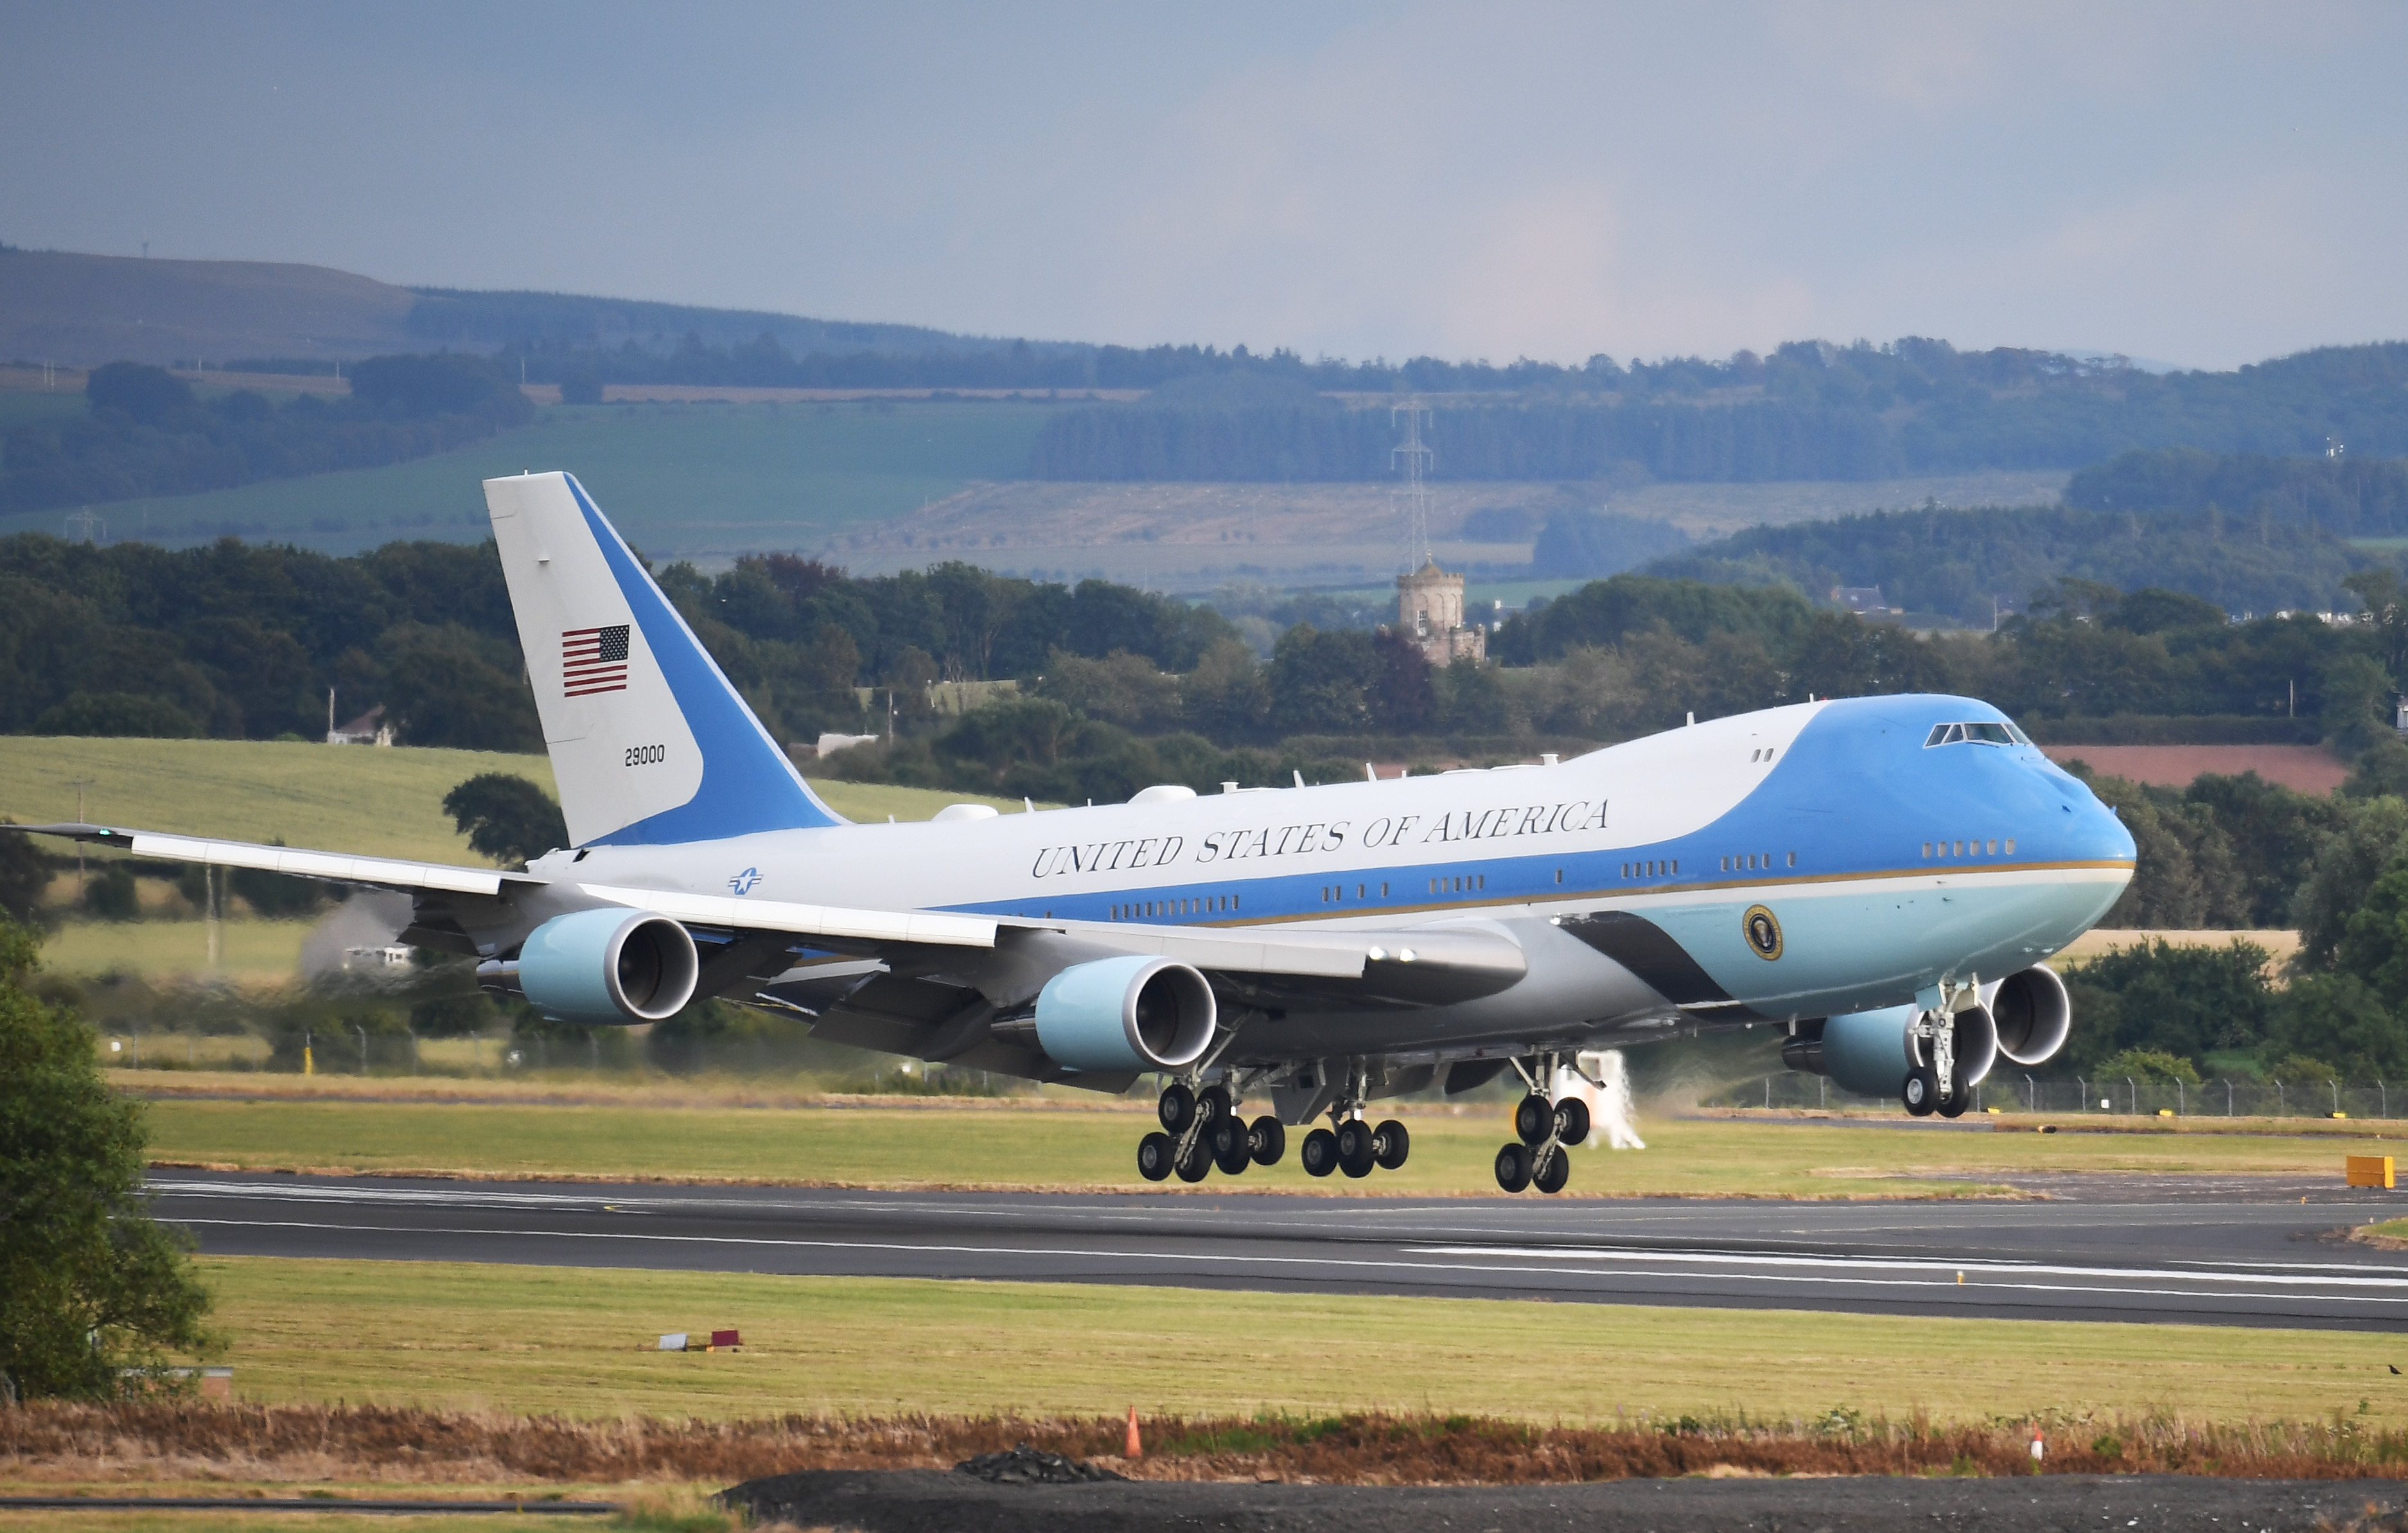 Самолеты через россию. Boeing 747 Air Force one. Боинг 747 президента США. Air Force one Boeing 747-8. Самолет президента США Air Force one.